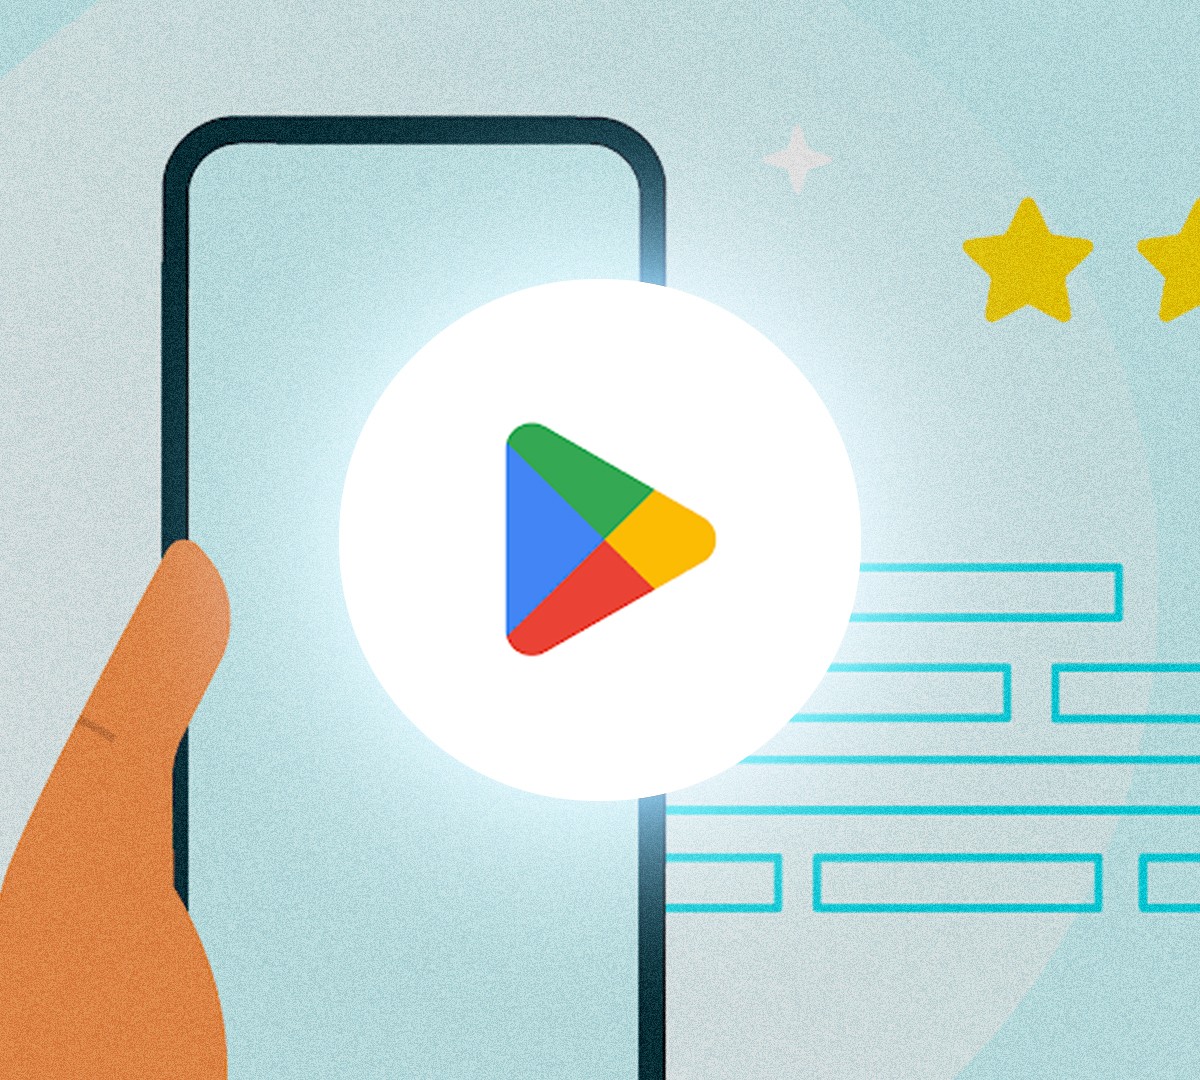 Google Play Store libera opção para sincronizar instalação de